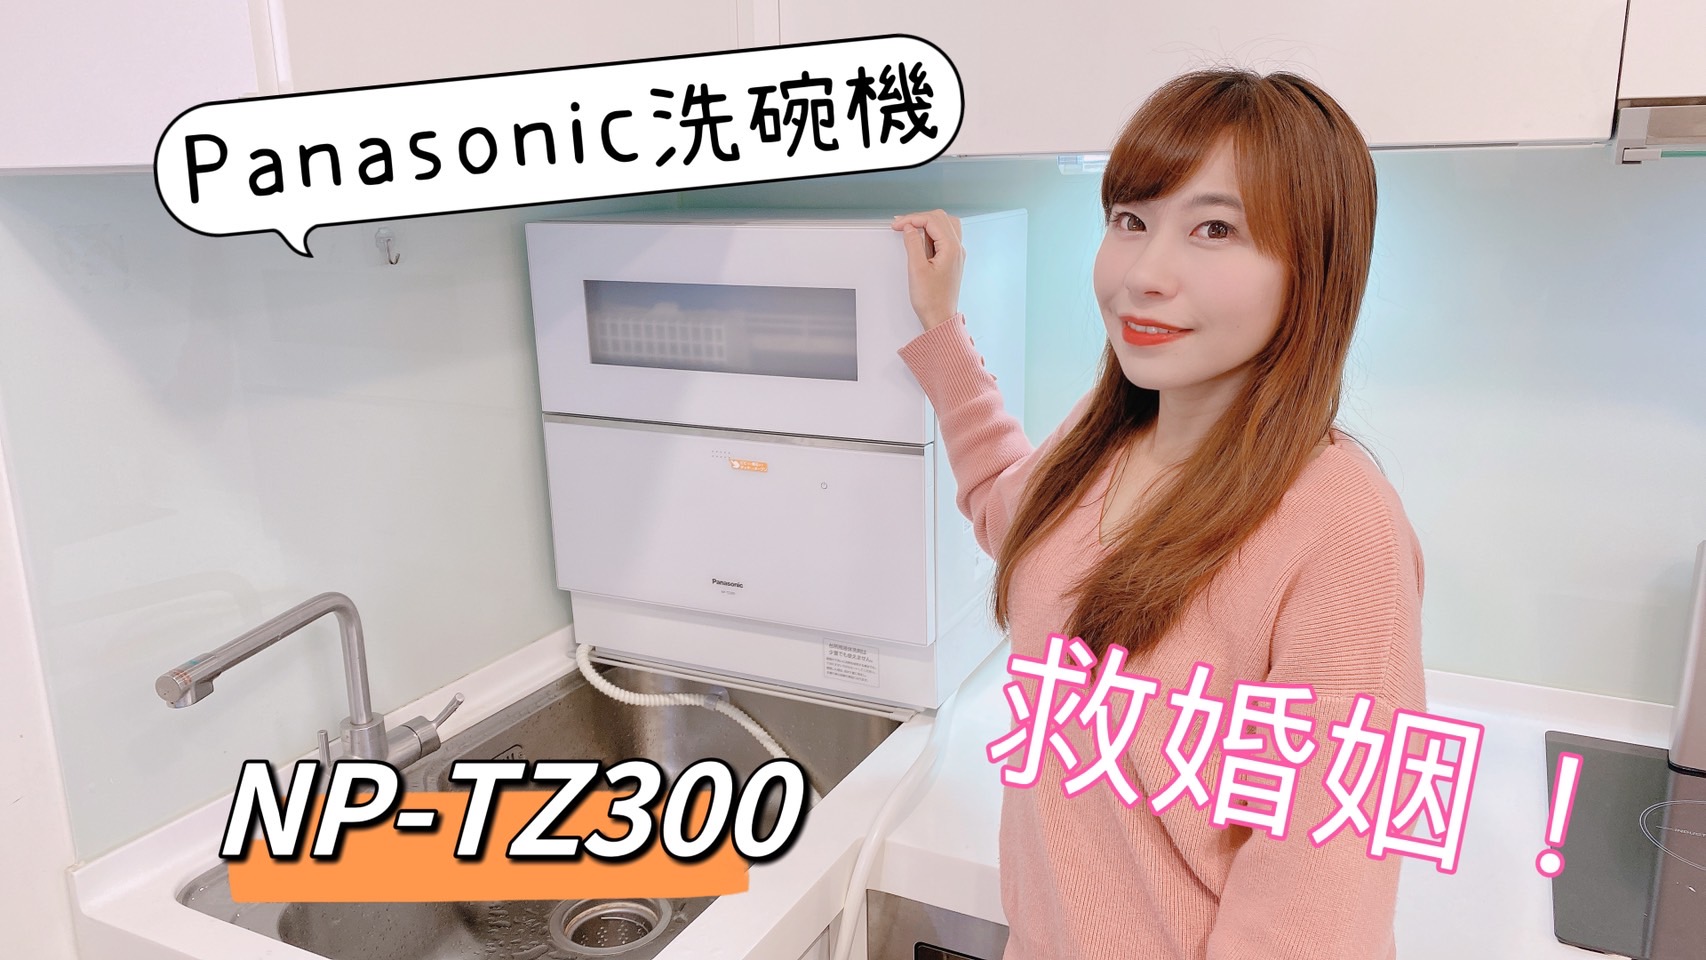 【洗碗機救婚姻】Panasonic TZ-300桌上型洗碗機,不用改廚房,比妳手洗還乾淨 @小環妞 幸福足跡